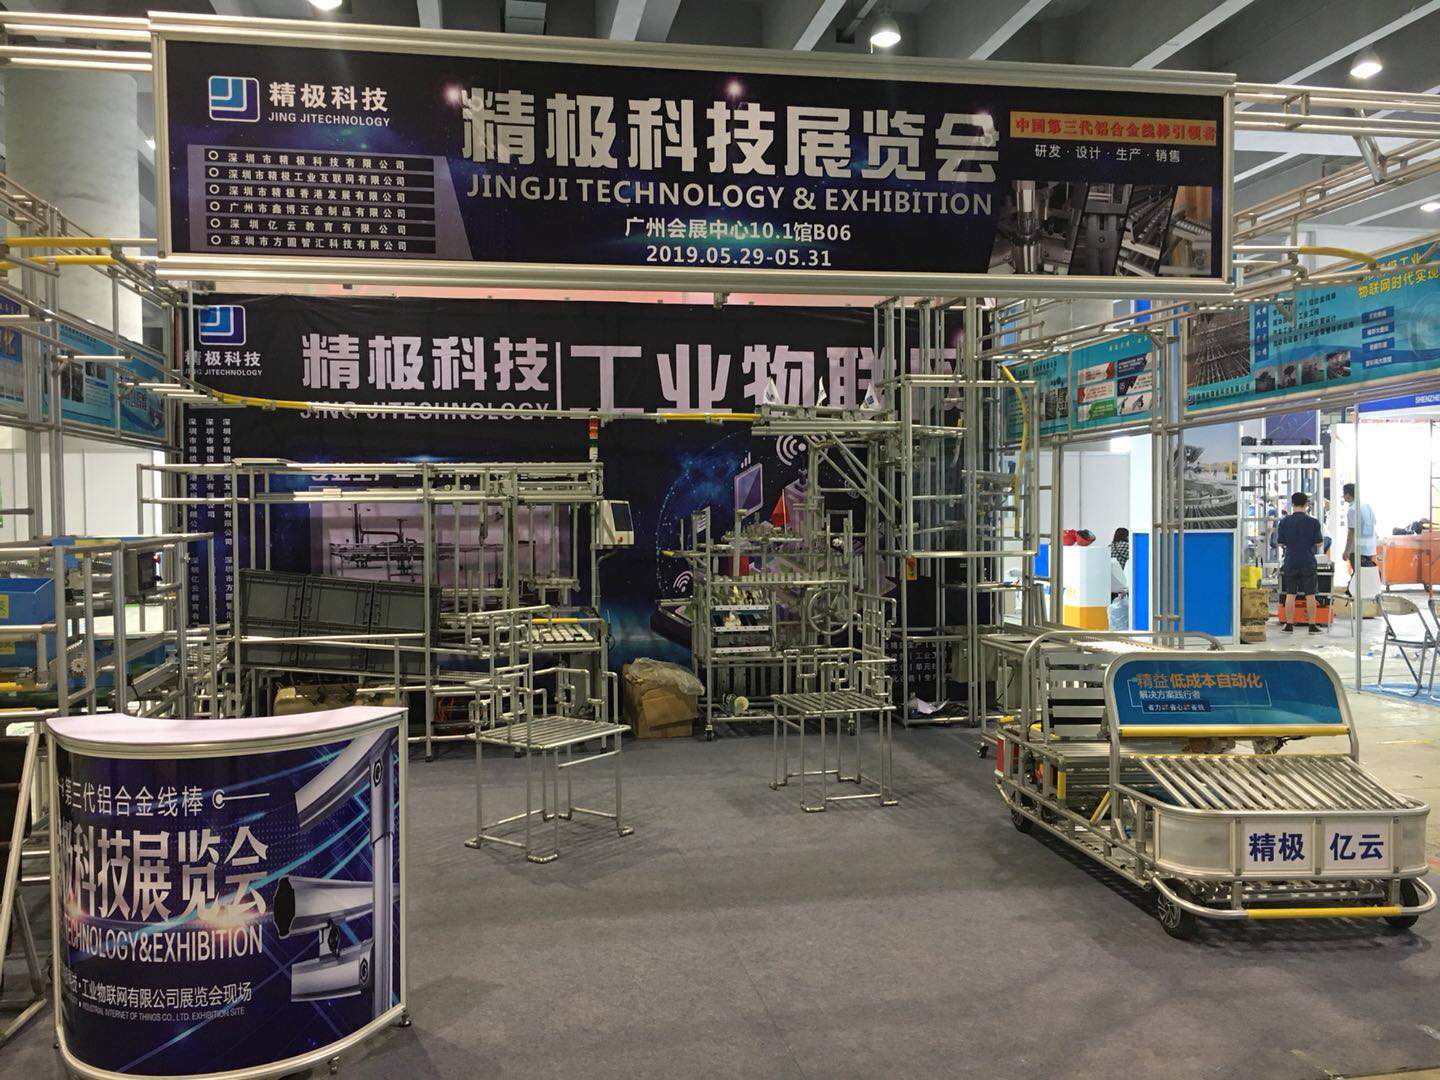 直播间!精极科技参与2019广州国际物流装备与技术展览会